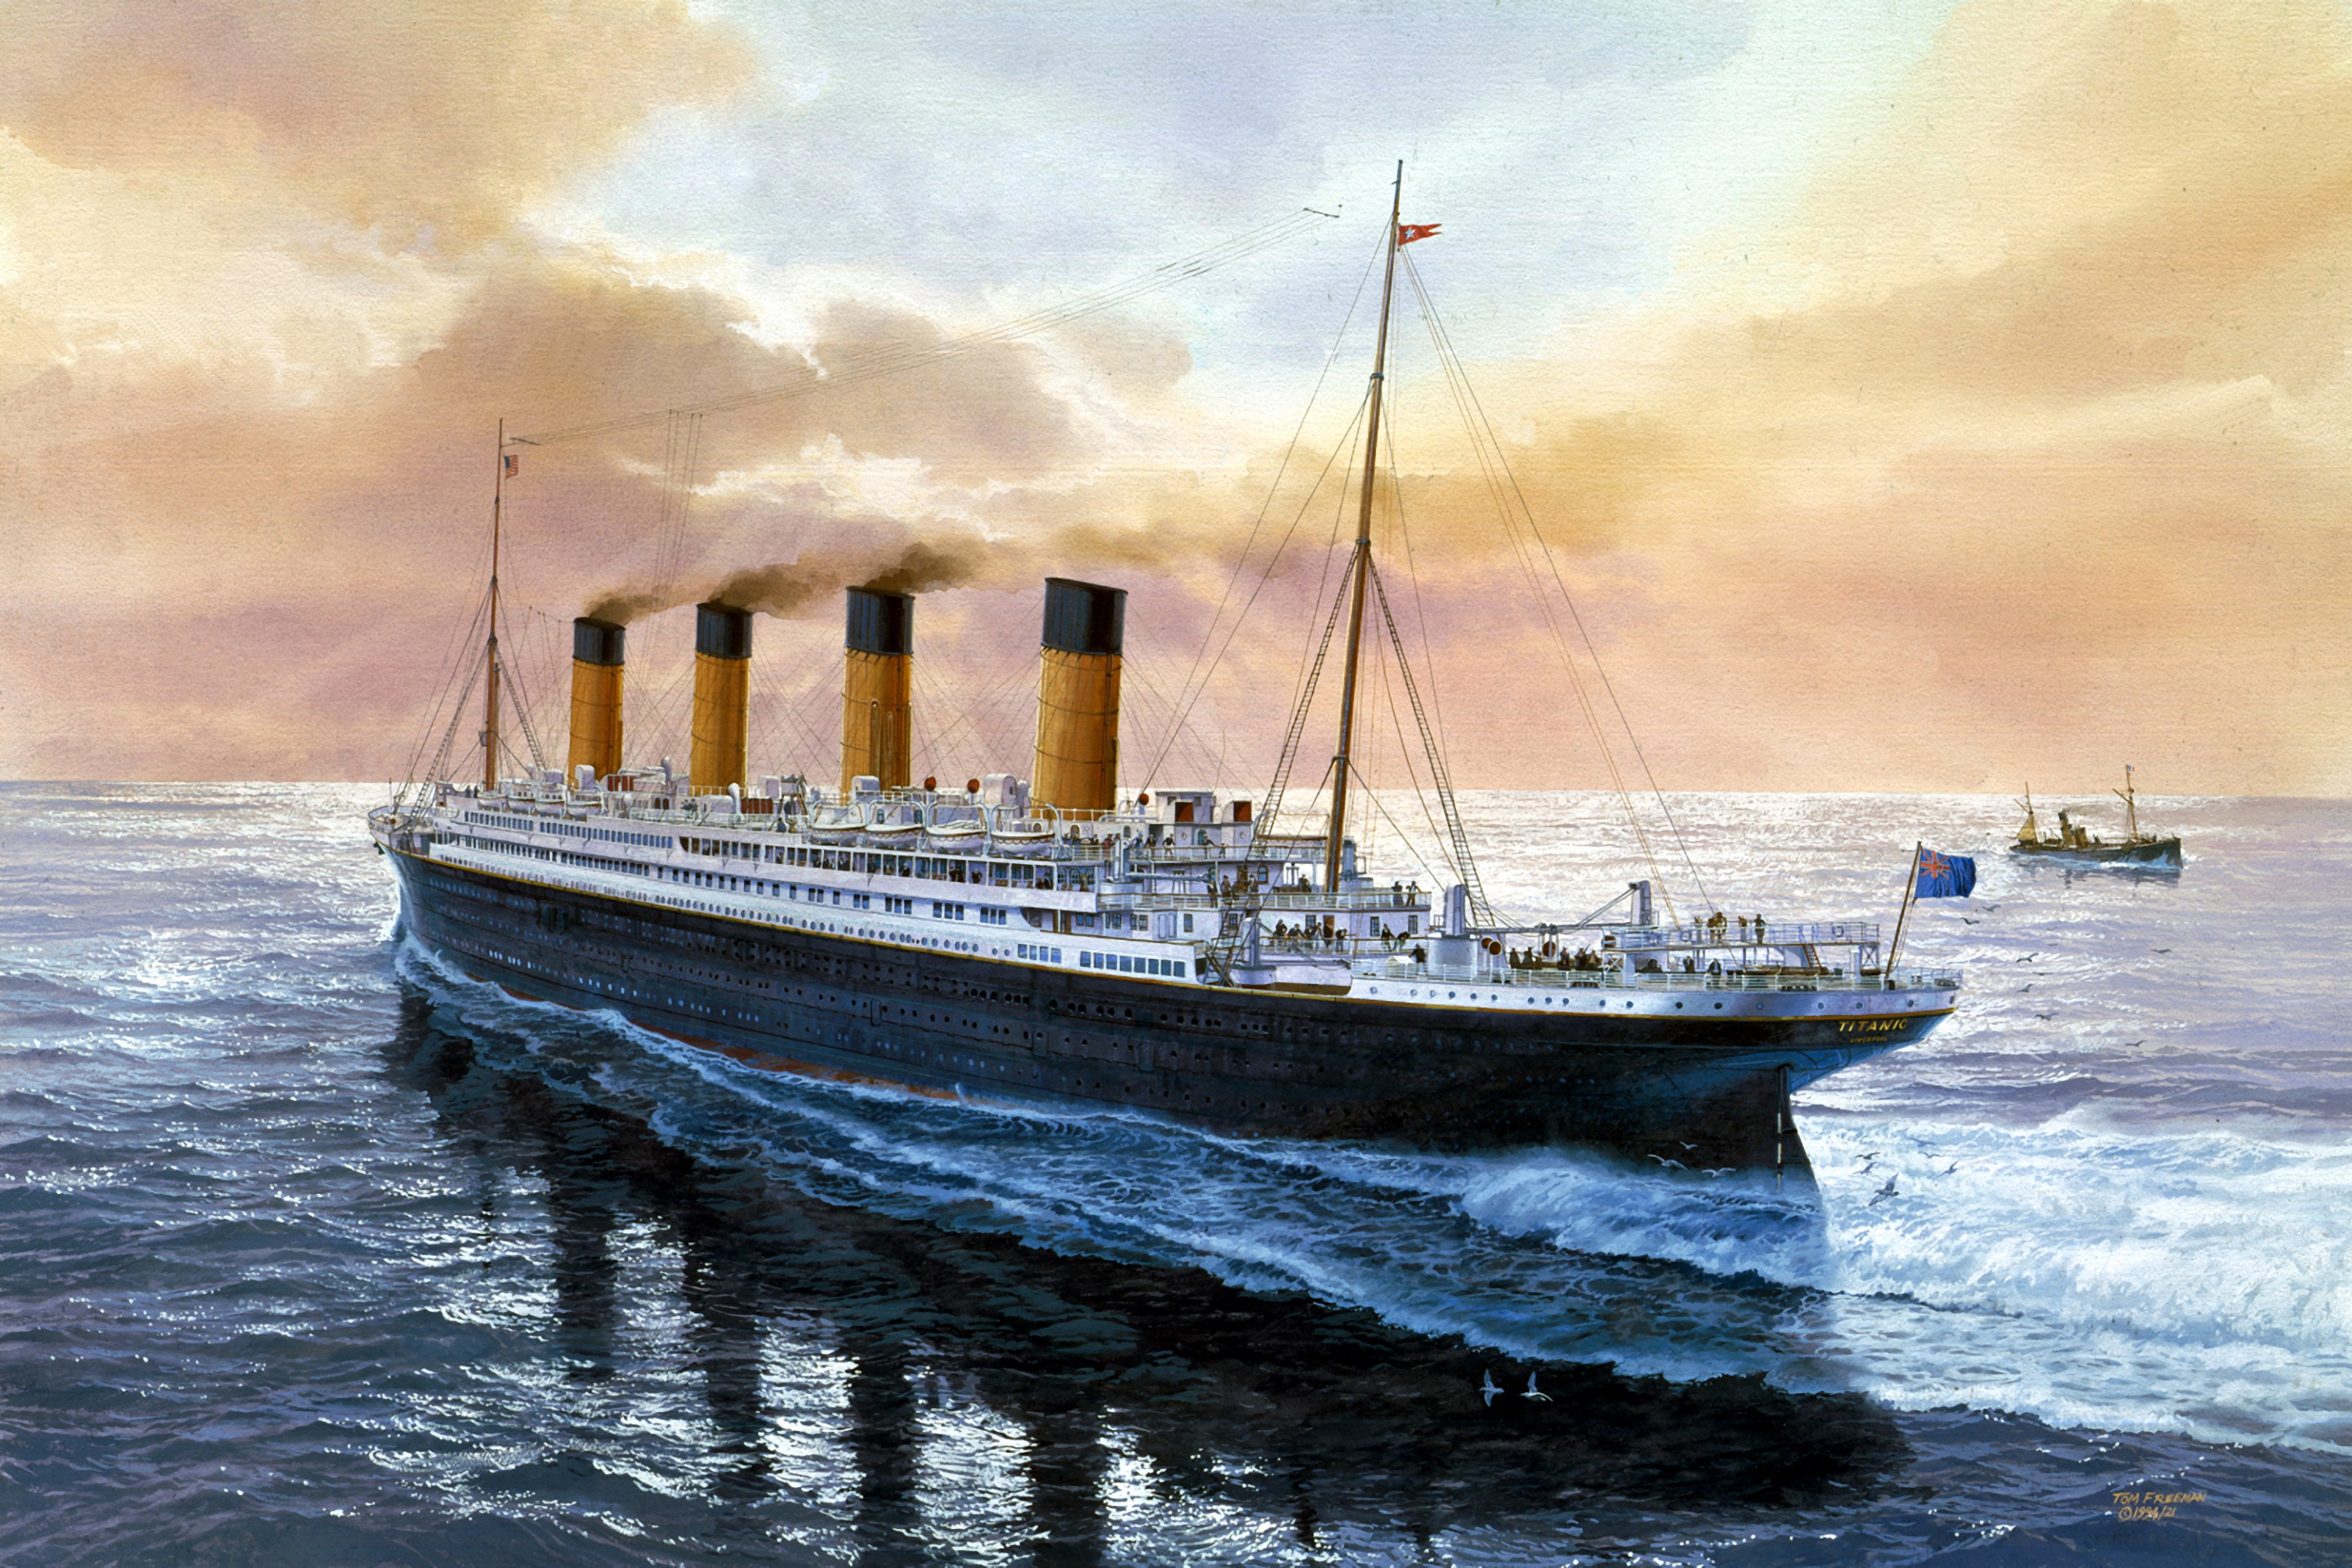 Titanic free download download tweet